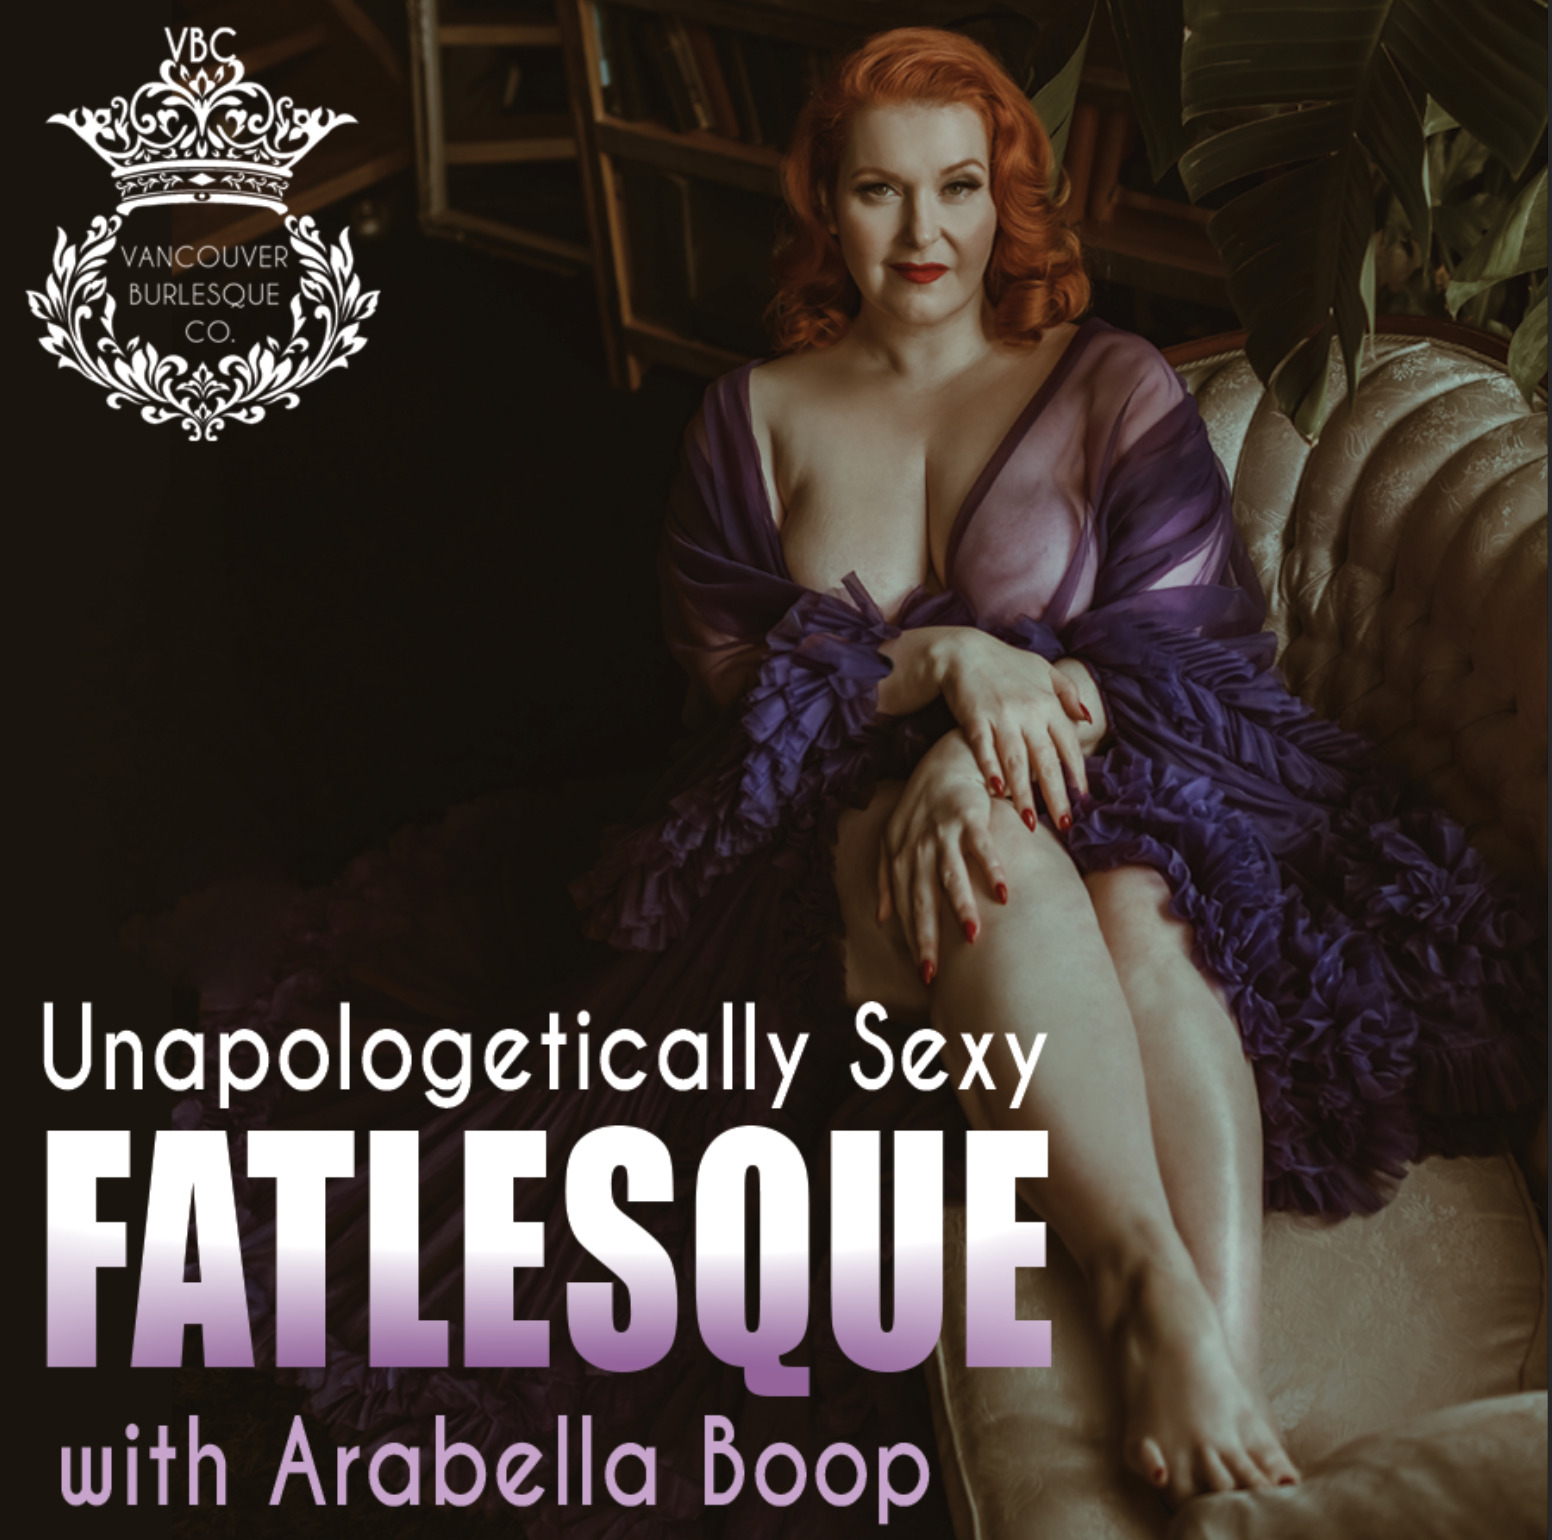 Unapologetically Sexy “Fatlesque”